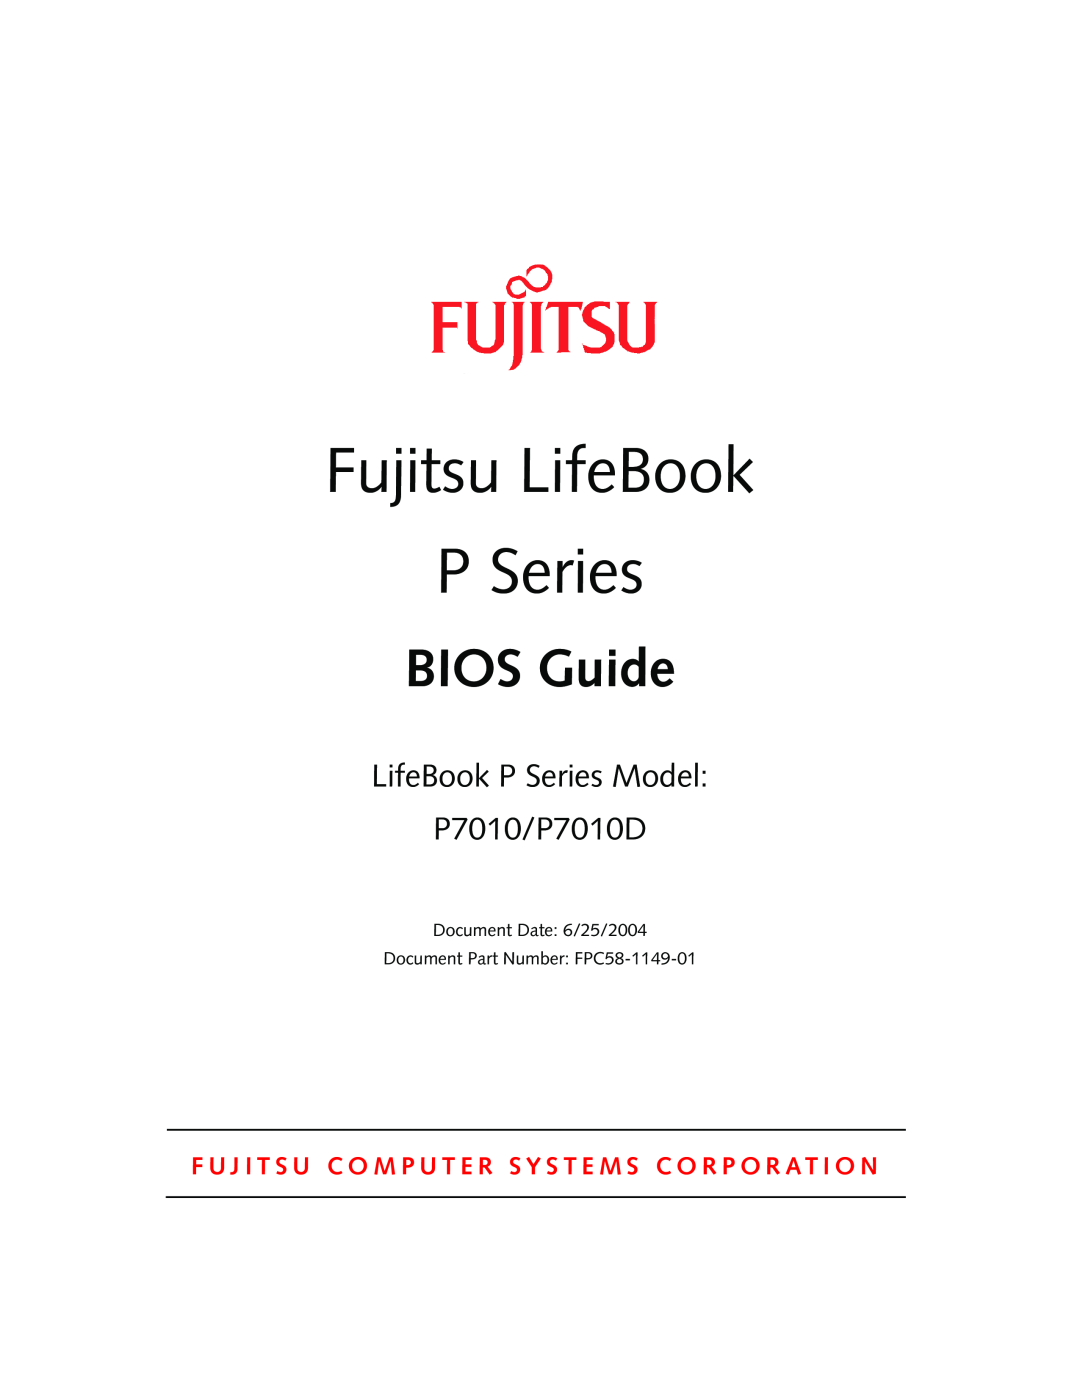 Fujitsu manual Fujitsu LifeBook, BIOS Guide, LifeBook P Series Model P7010/P7010D 